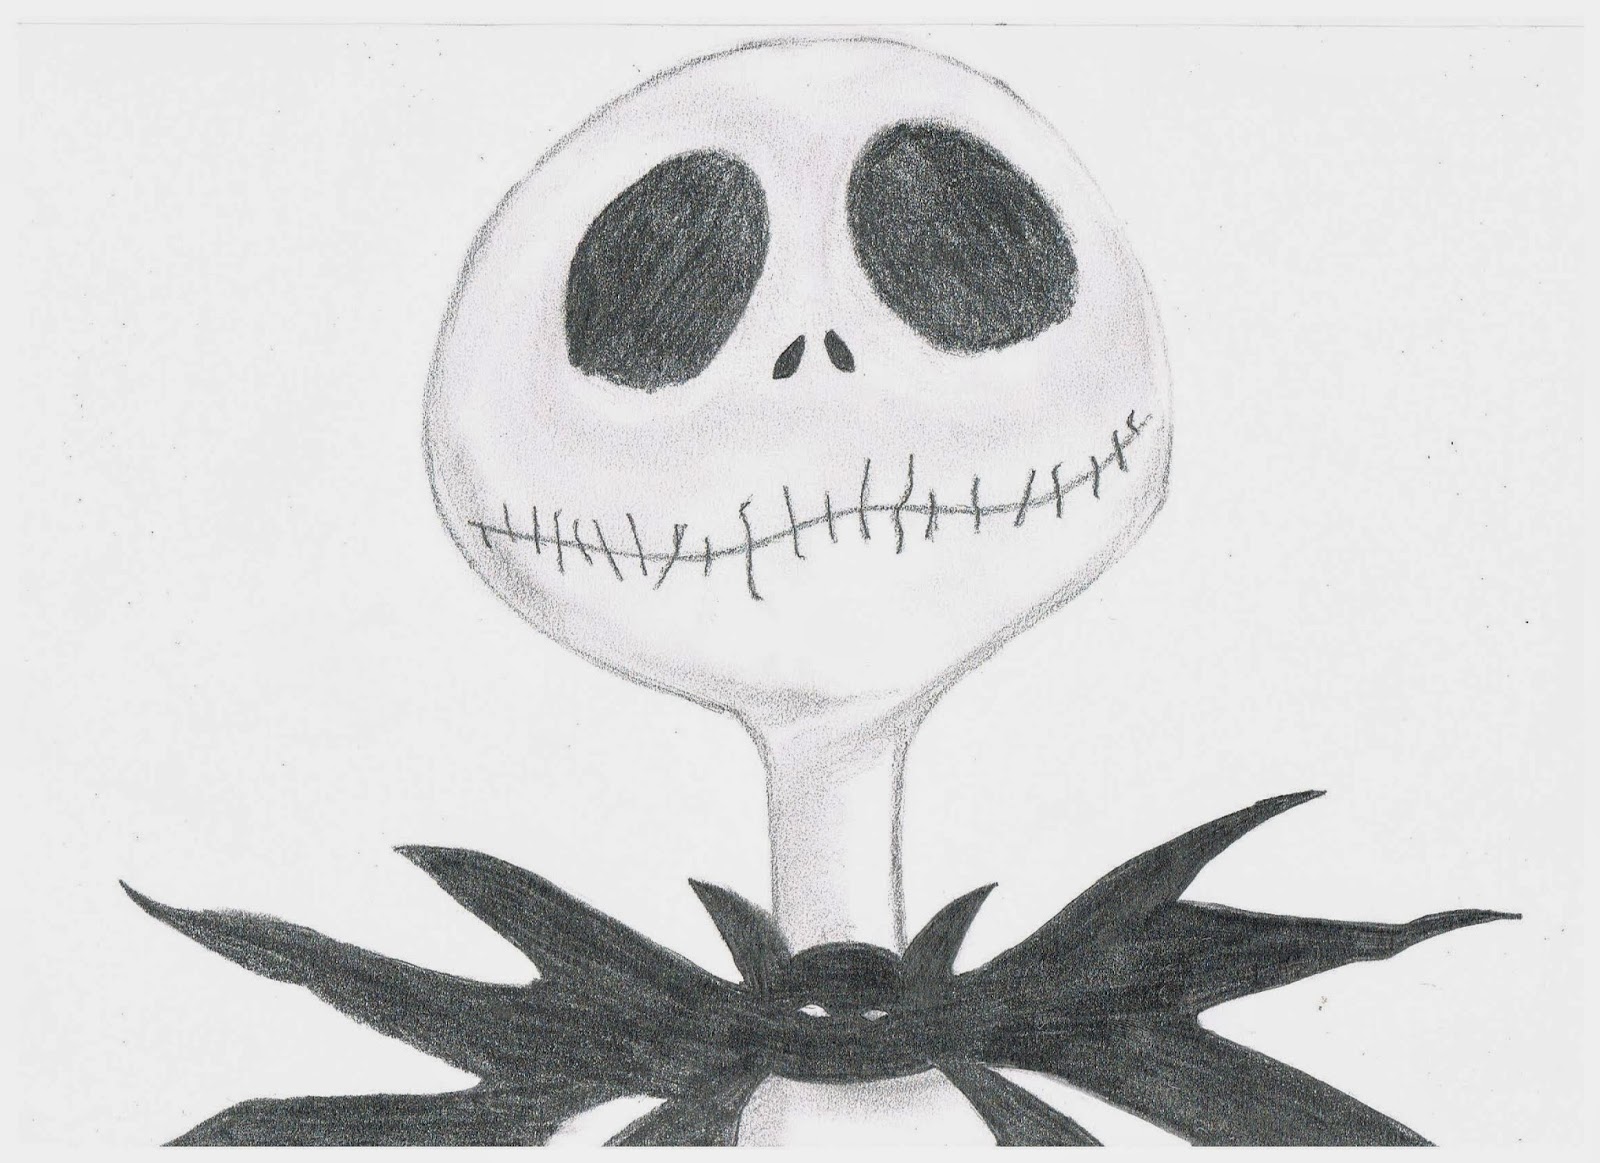 Jack skeleton para dibujar - Imagui